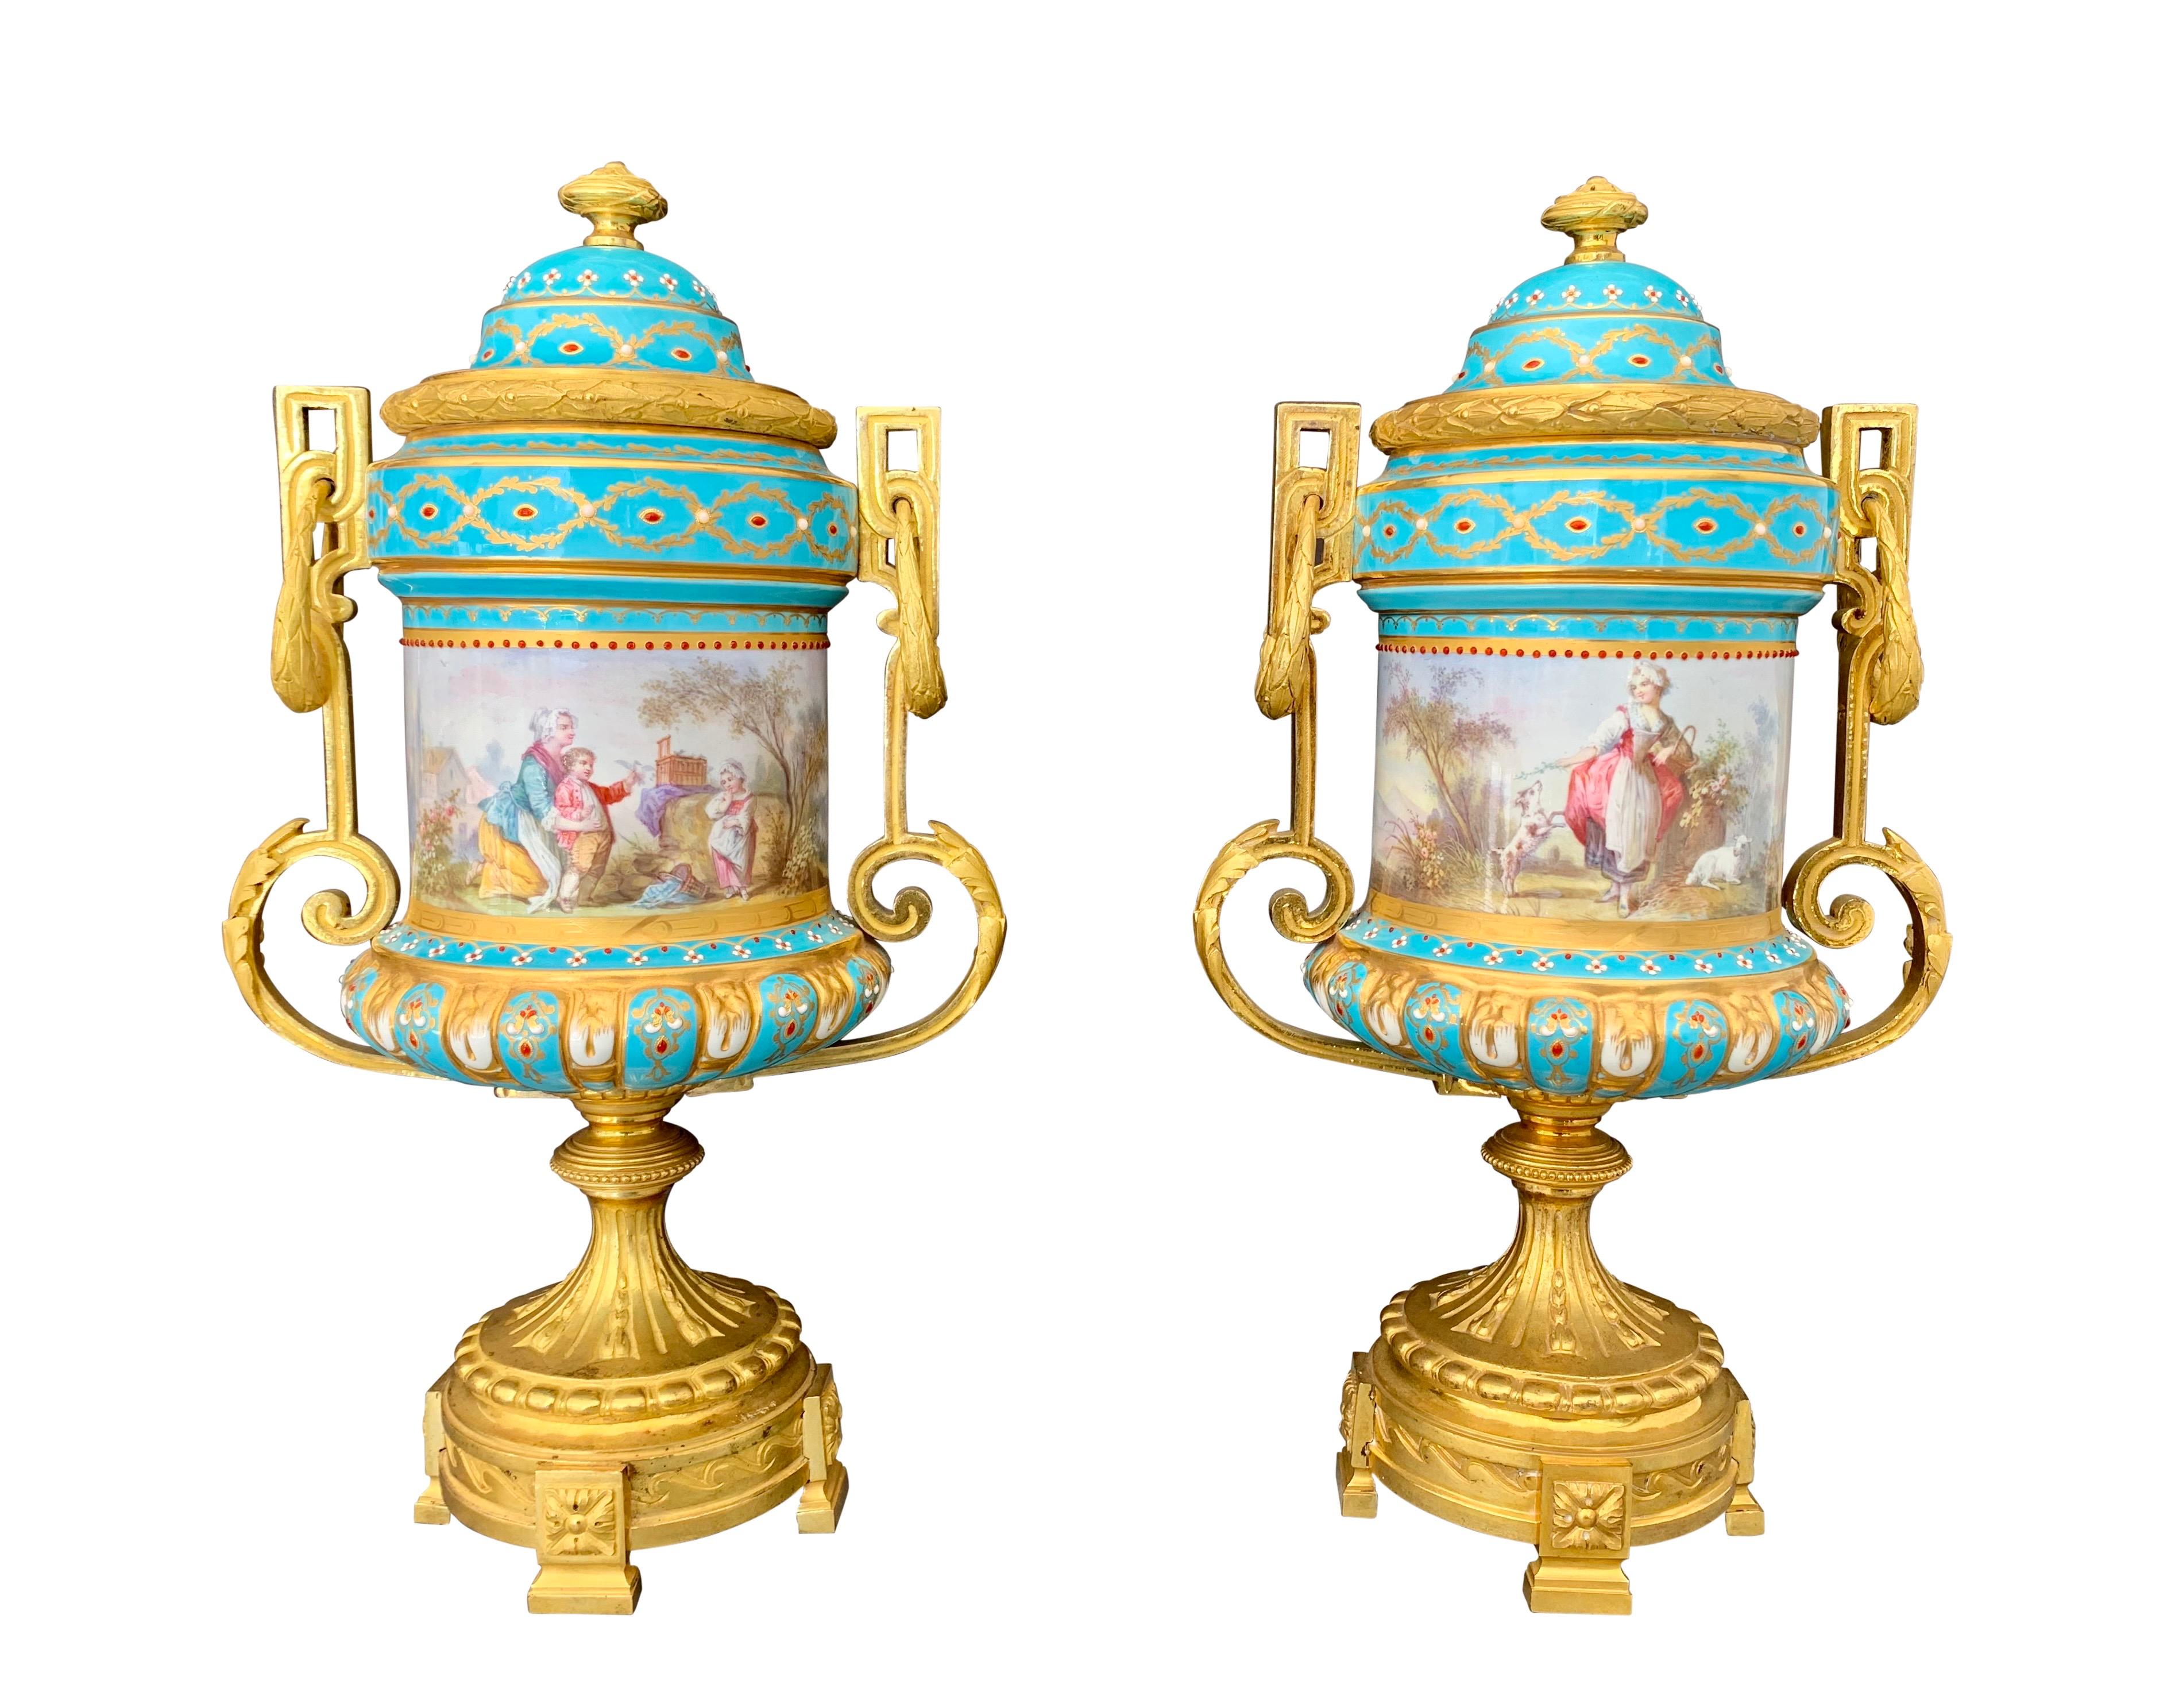 Eine sehr feine Qualität Paar 19. Jahrhundert Französisch Sevres-Stil handbemalt Jeweled Porzellan Ormolu montiert abgedeckt Vasen / Urnen. Jede Urne hat einen türkisfarbenen Grund und ist auf beiden Seiten mit klassischen Familienszenen